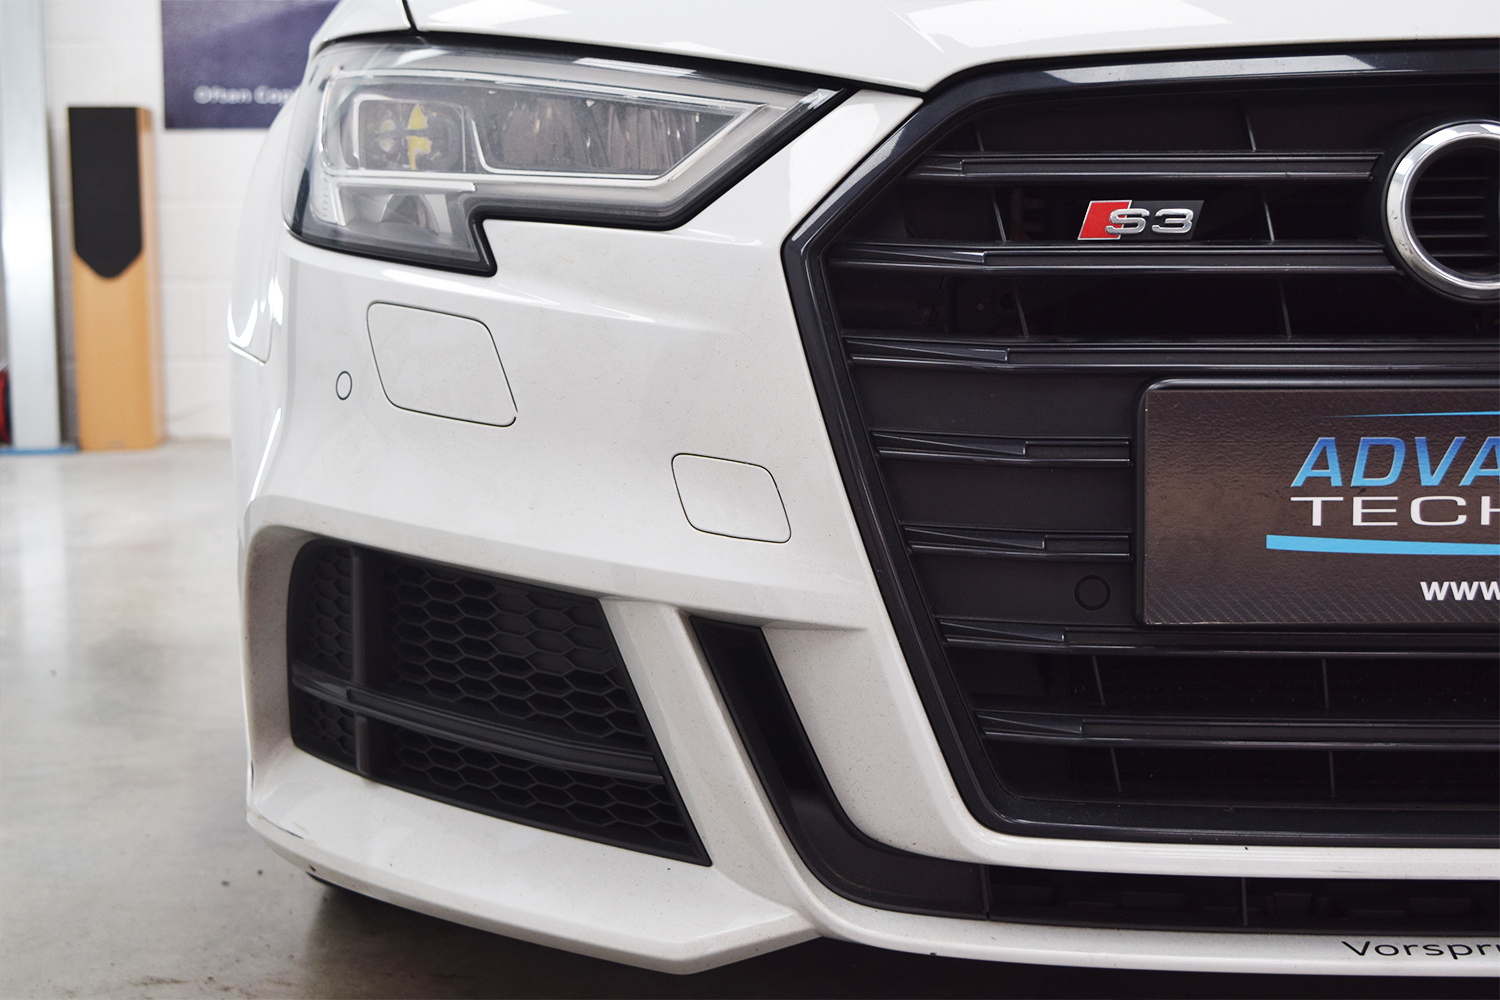 Audi S3 Driver Side Sensors